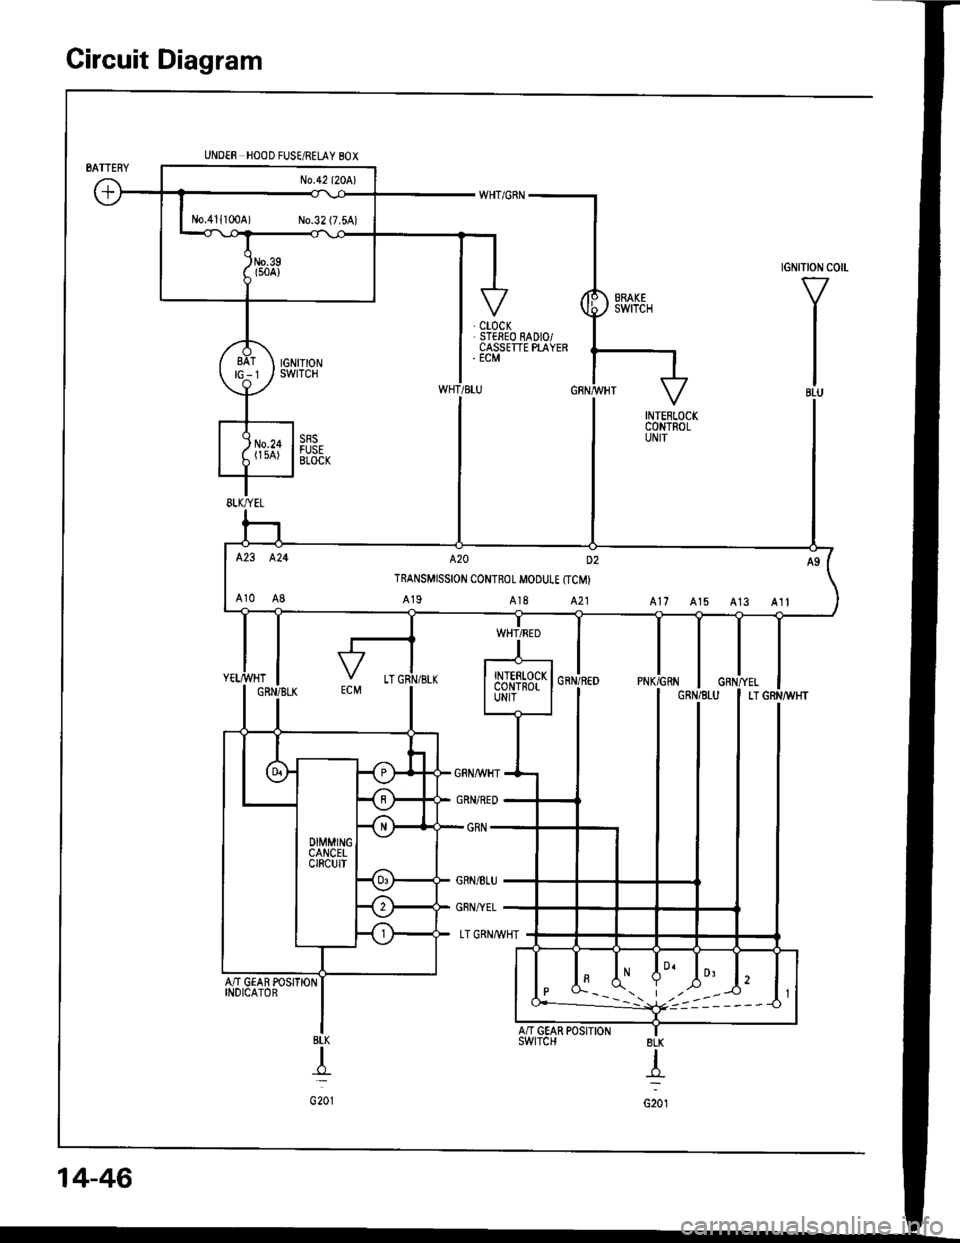 HONDA INTEGRA 1994 4.G Workshop Manual Circuit Diagram
tGNtTtoN c0 -
V
I
I
IBLU
UNDER HOOD FUSE/RELAY 80X
AN GEAR POSITIONINDICATOR
BLK
T
G201
No.411100A) No.32 (7.5A)
423 424 A20 D2
TRANSMISSION CONTROL MOOUI.E {TCM)
Ar0 A8 A19 A18 A21 A1